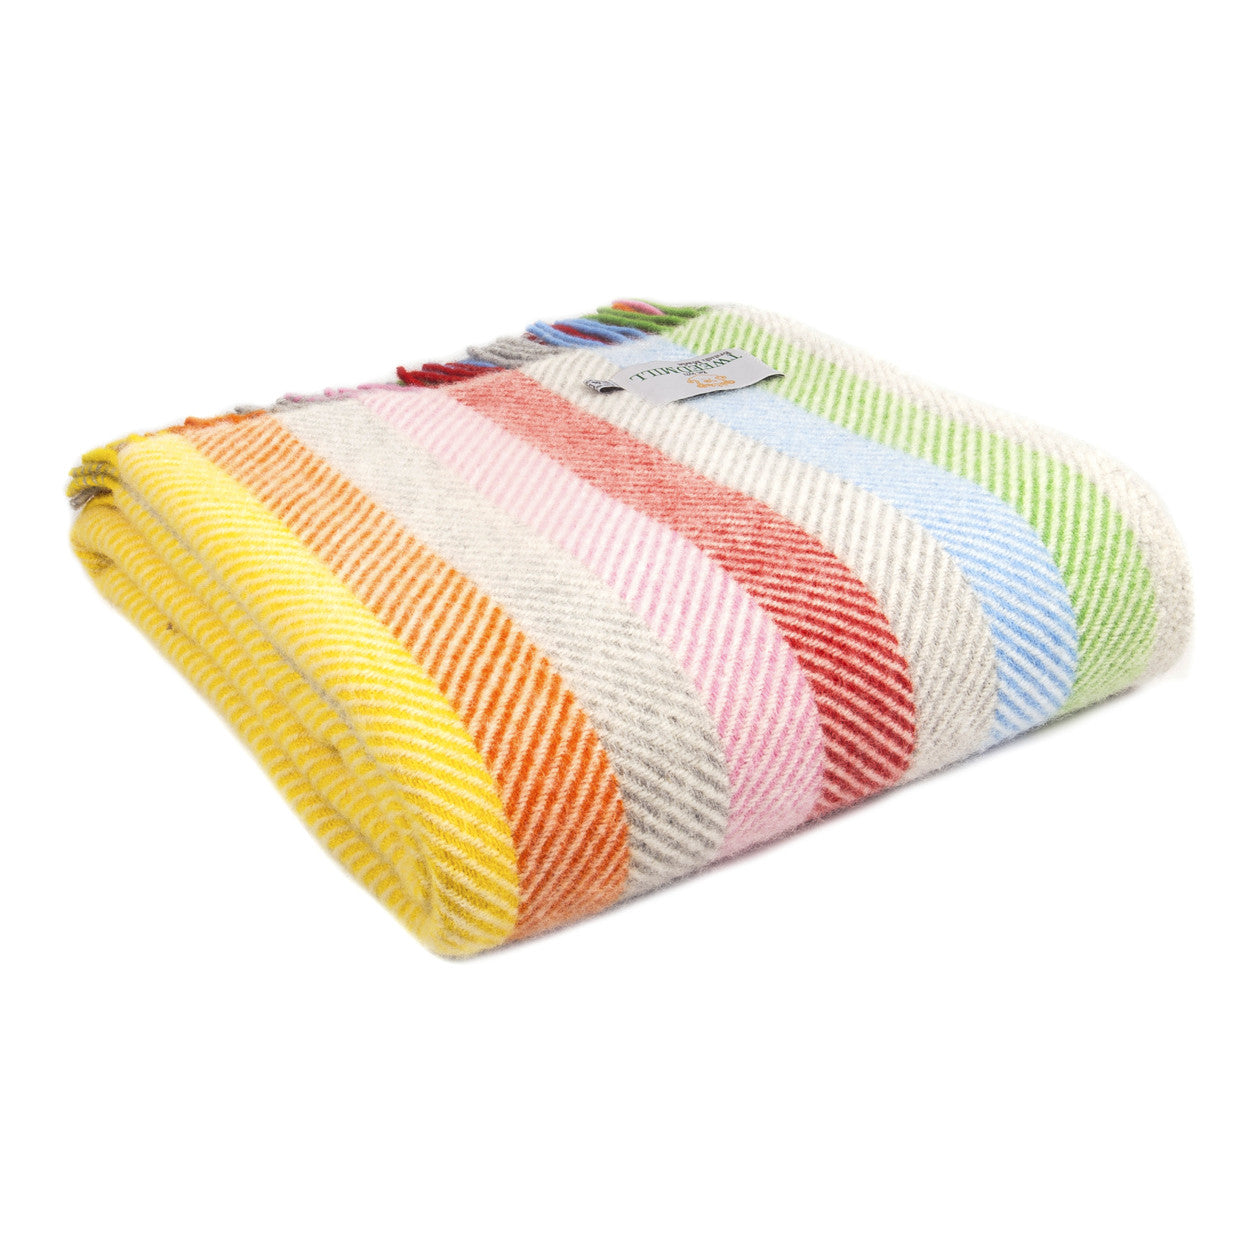 Herringbone Rainbow Stripe Wool Blanket - THE BRISTOL ARTISAN